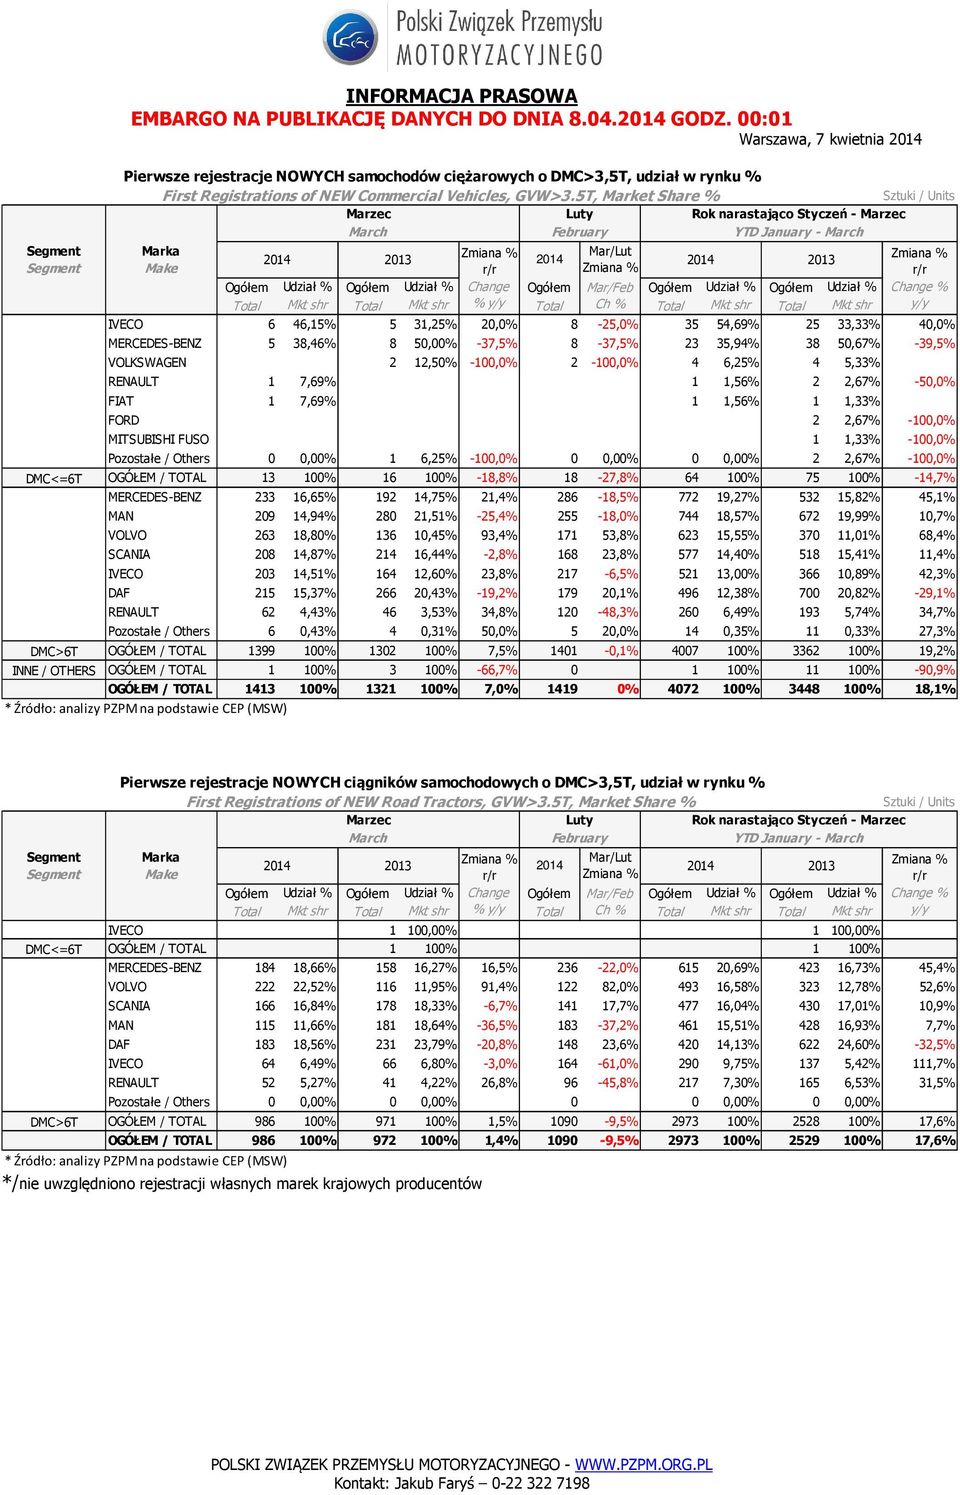 5T, Market Share % Marka Mar/Lut Make IVECO 6 46,15% % 5 31,25% % 20,0% 8-25,0% 35 54,69% % 25 33,33% % 40,0% MERCEDES-BENZ 5 38,46% 8 50,00% -37,5% 8-37,5% 23 35,94% 38 50,67% -39,5% VOLKSWAGEN 0